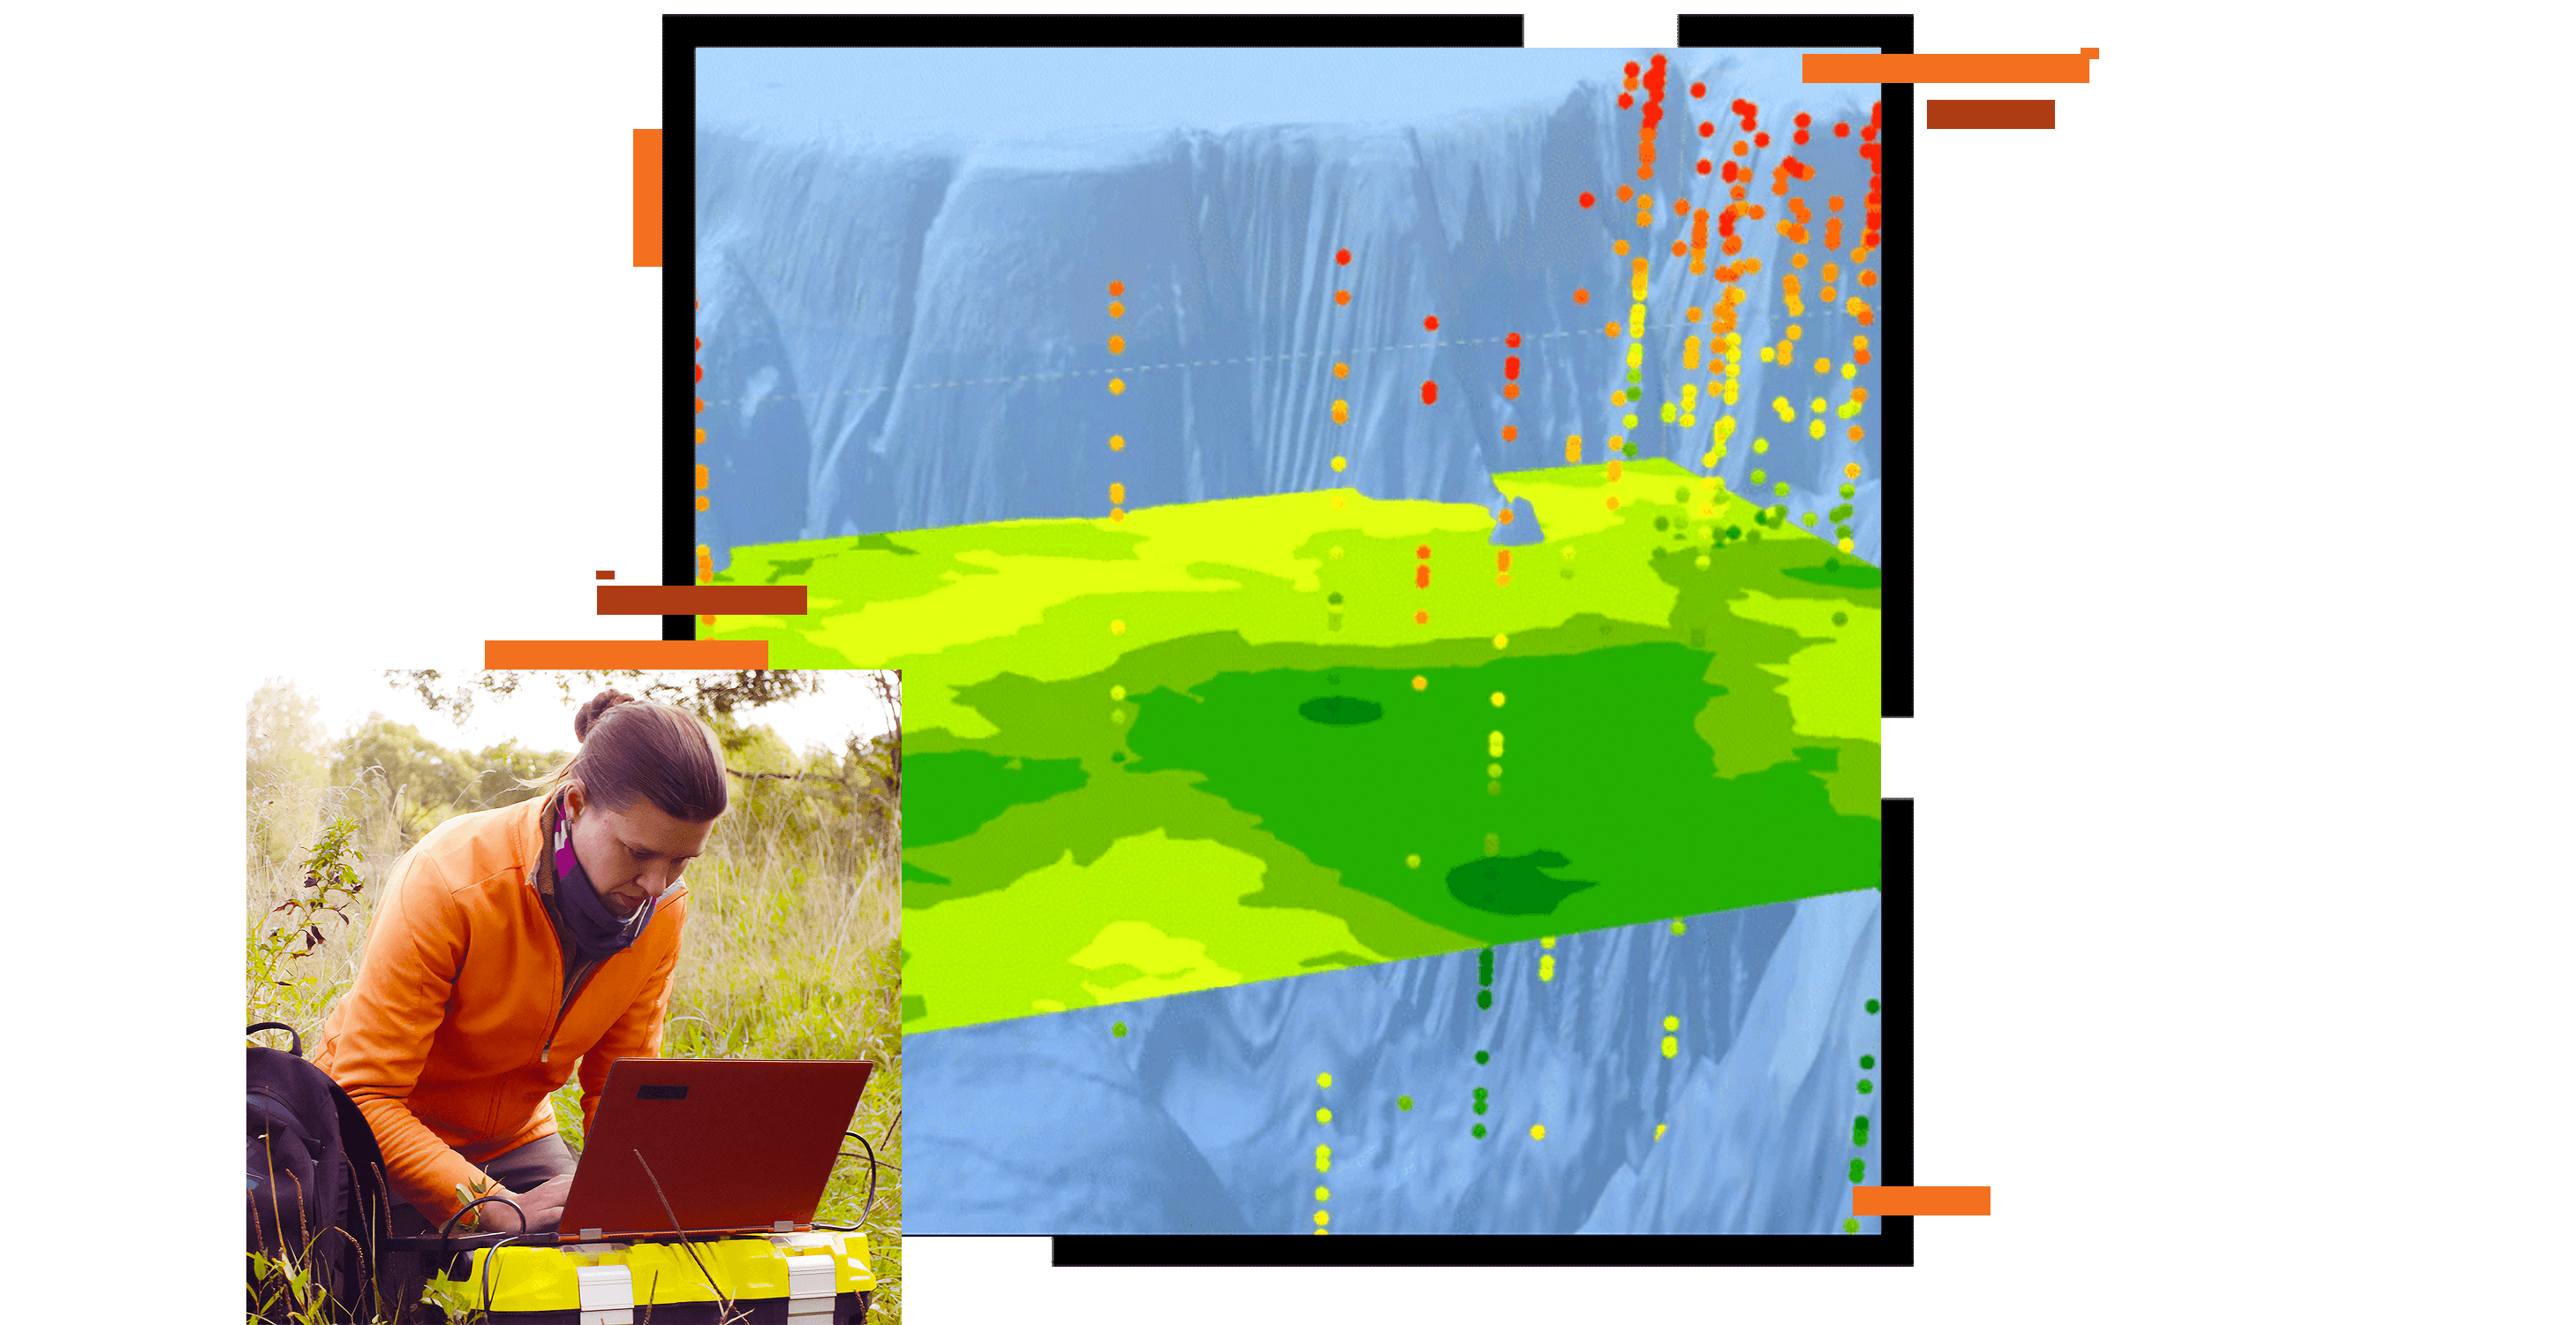 Слой абстрактной карты в зеленом и синем цветах, наложенный на фотографию полевого исследователя, использующего ноутбук на открытом воздухе.